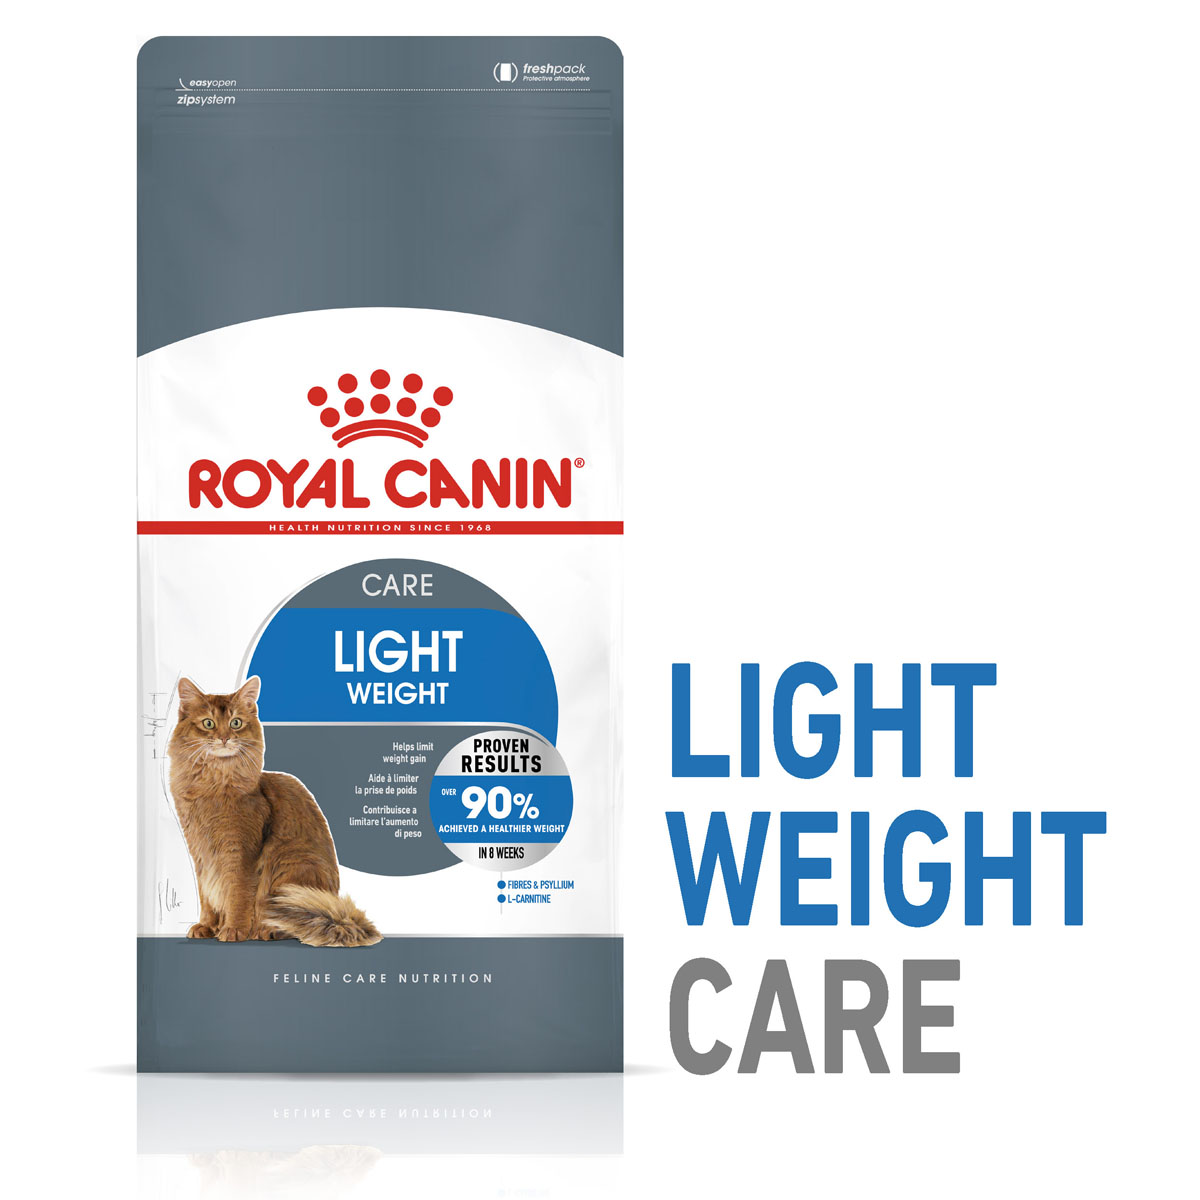 ROYAL CANIN LIGHT WEIGHT CARE Trockenfutter für zu Übergewicht neigenden Katzen 1,5kg